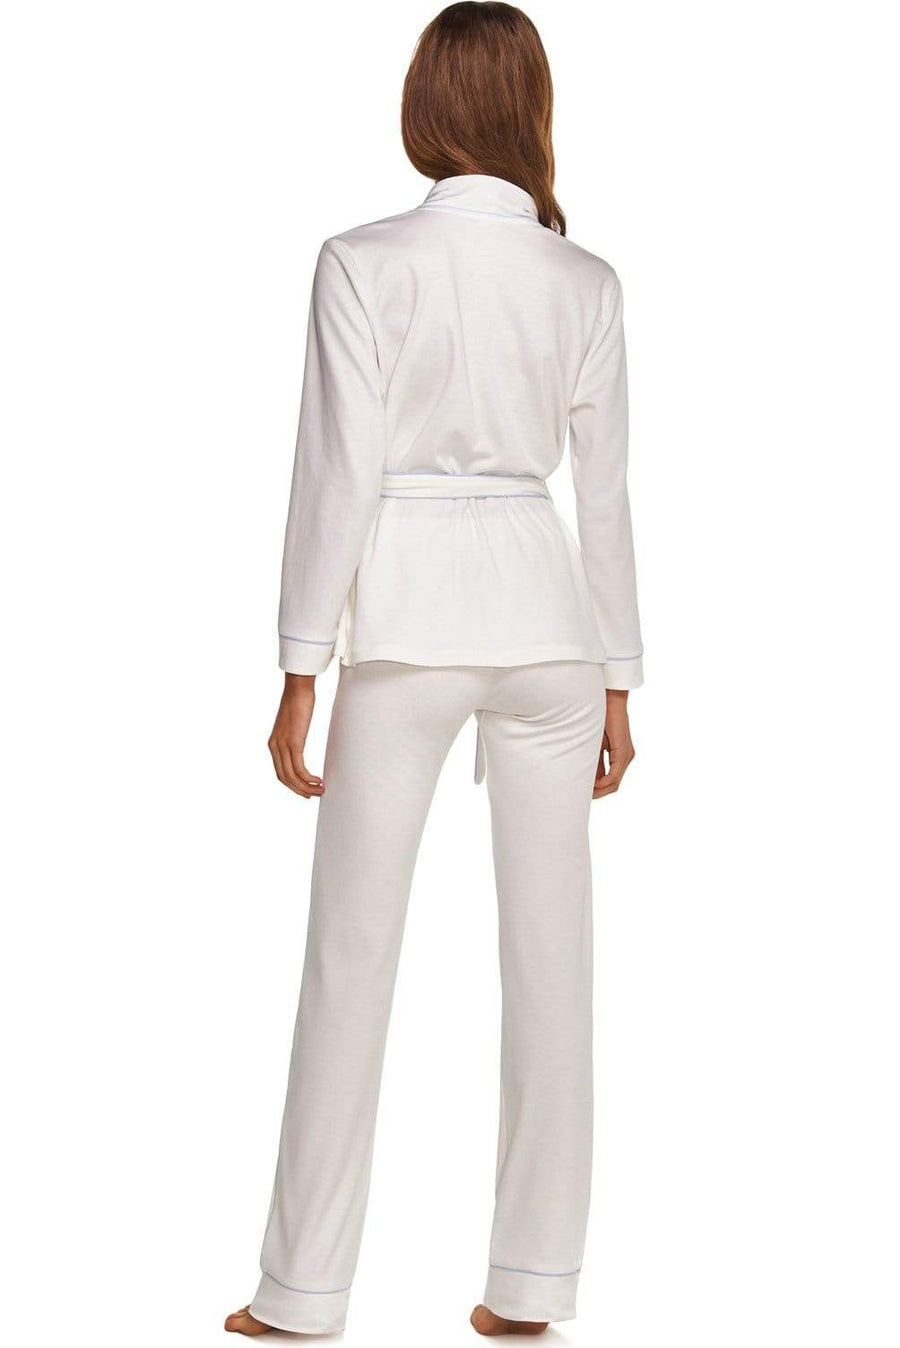 Women's 2-piece Loungewear set in Organic luxury Cotton.